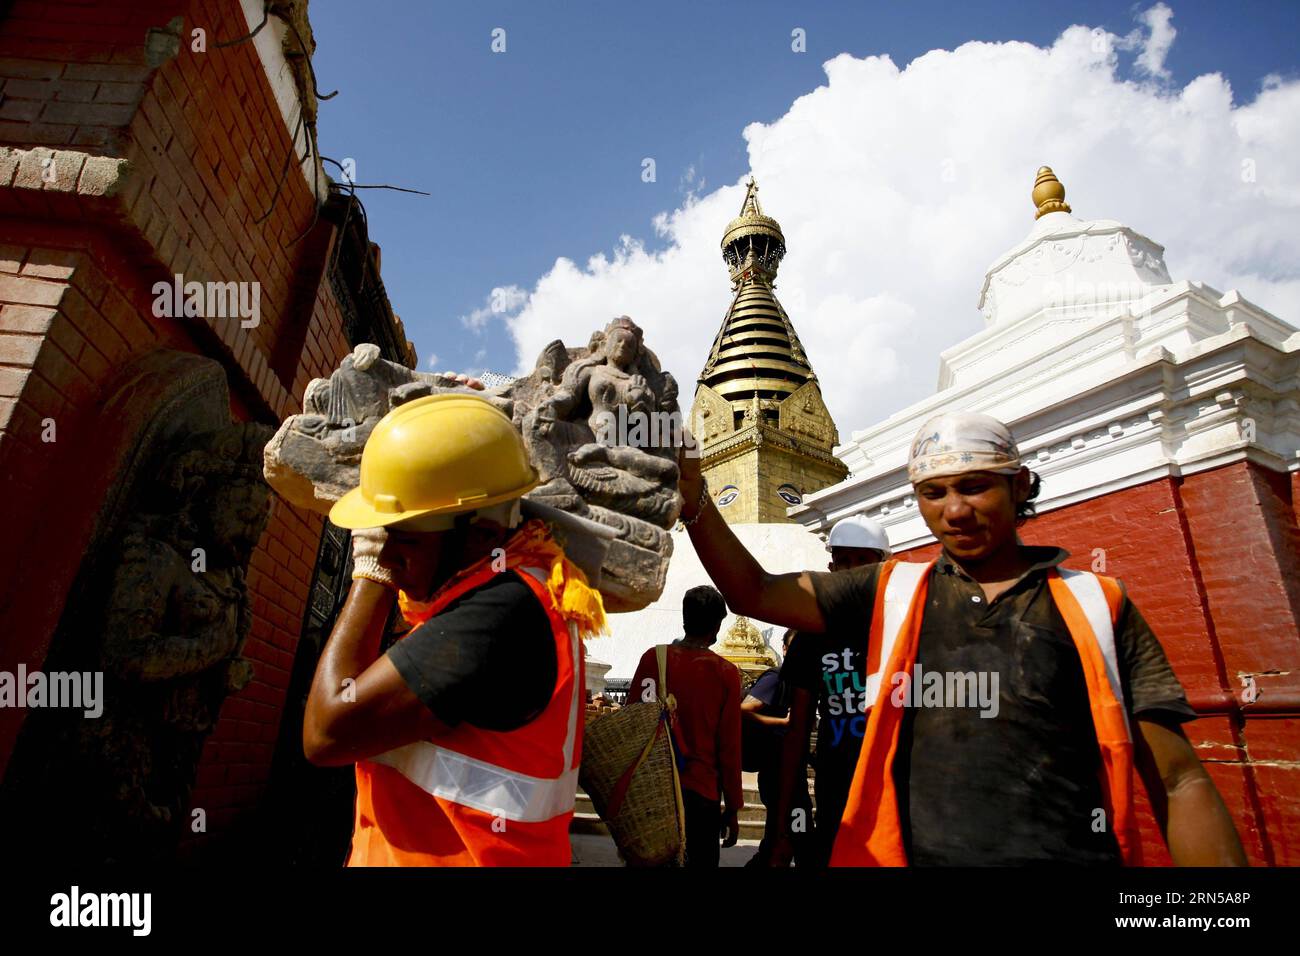 KATHMANDU, 18. Juni 2015 – Arbeiter versetzen ein Götteridol an einen sicheren Ort im Swoyambhunath Stupa in Kathmandu, Nepal, 18. Juni 2015. Swoyambhunath Stupa, ein UNESCO-Weltkulturerbe Nepals, wurde ab 16. Juni für Touristen wieder eröffnet. ) NEPAL-KATHMANDU-WIEDERAUFBAU-WELTERBESTÄTTE PratapxThapa PUBLICATIONxNOTxINxCHN KATHMANDU 18. Juni 2015 Arbeiter Transfer zum Götzen Gottes an einen sicheren Ort IM Stupa in Kathmandu Nepal 18. Juni 2015 Stupa ein UNESCO-Weltkulturerbe Nepals, das für Touristen ab 16. Juni wieder eröffnet wurde Nepal Kathmandu Wiederaufbau-Weltkulturerbe PratapxThapa PUBL Stockfoto